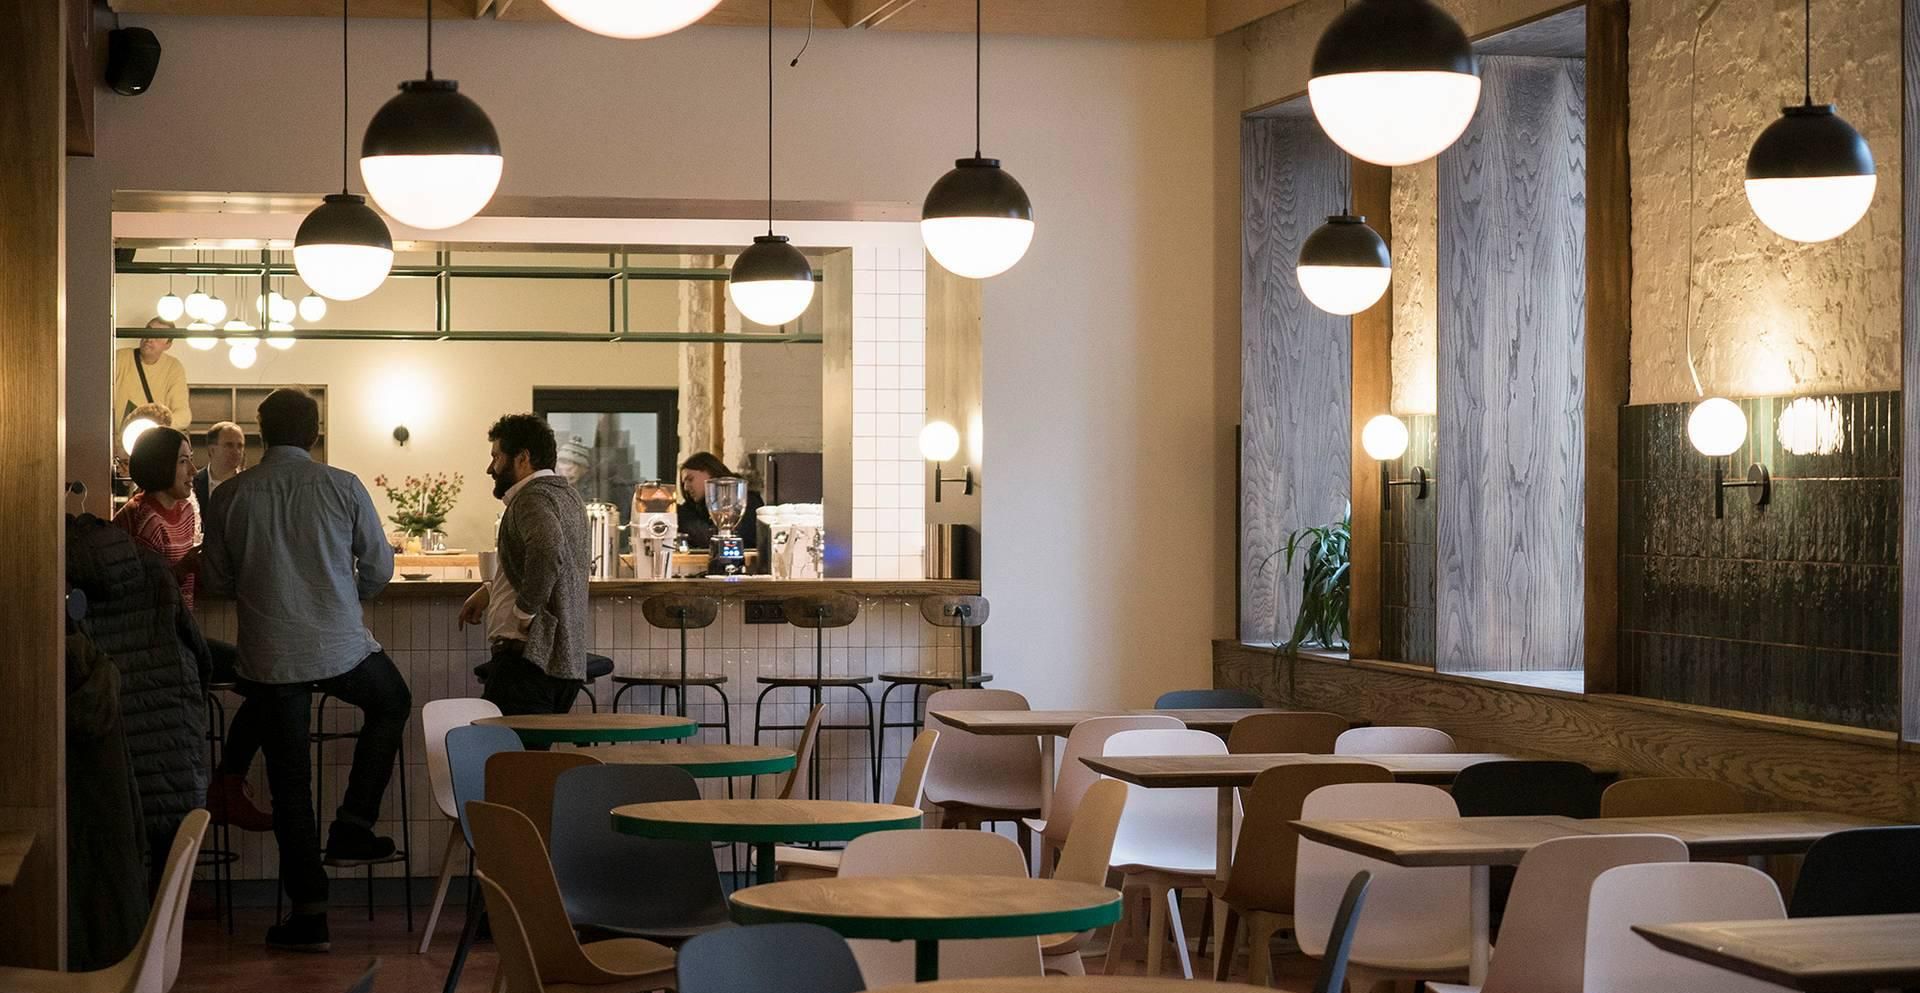 Бизнес для города: в Киеве открыли уникальный общественный ресторан Urban Space